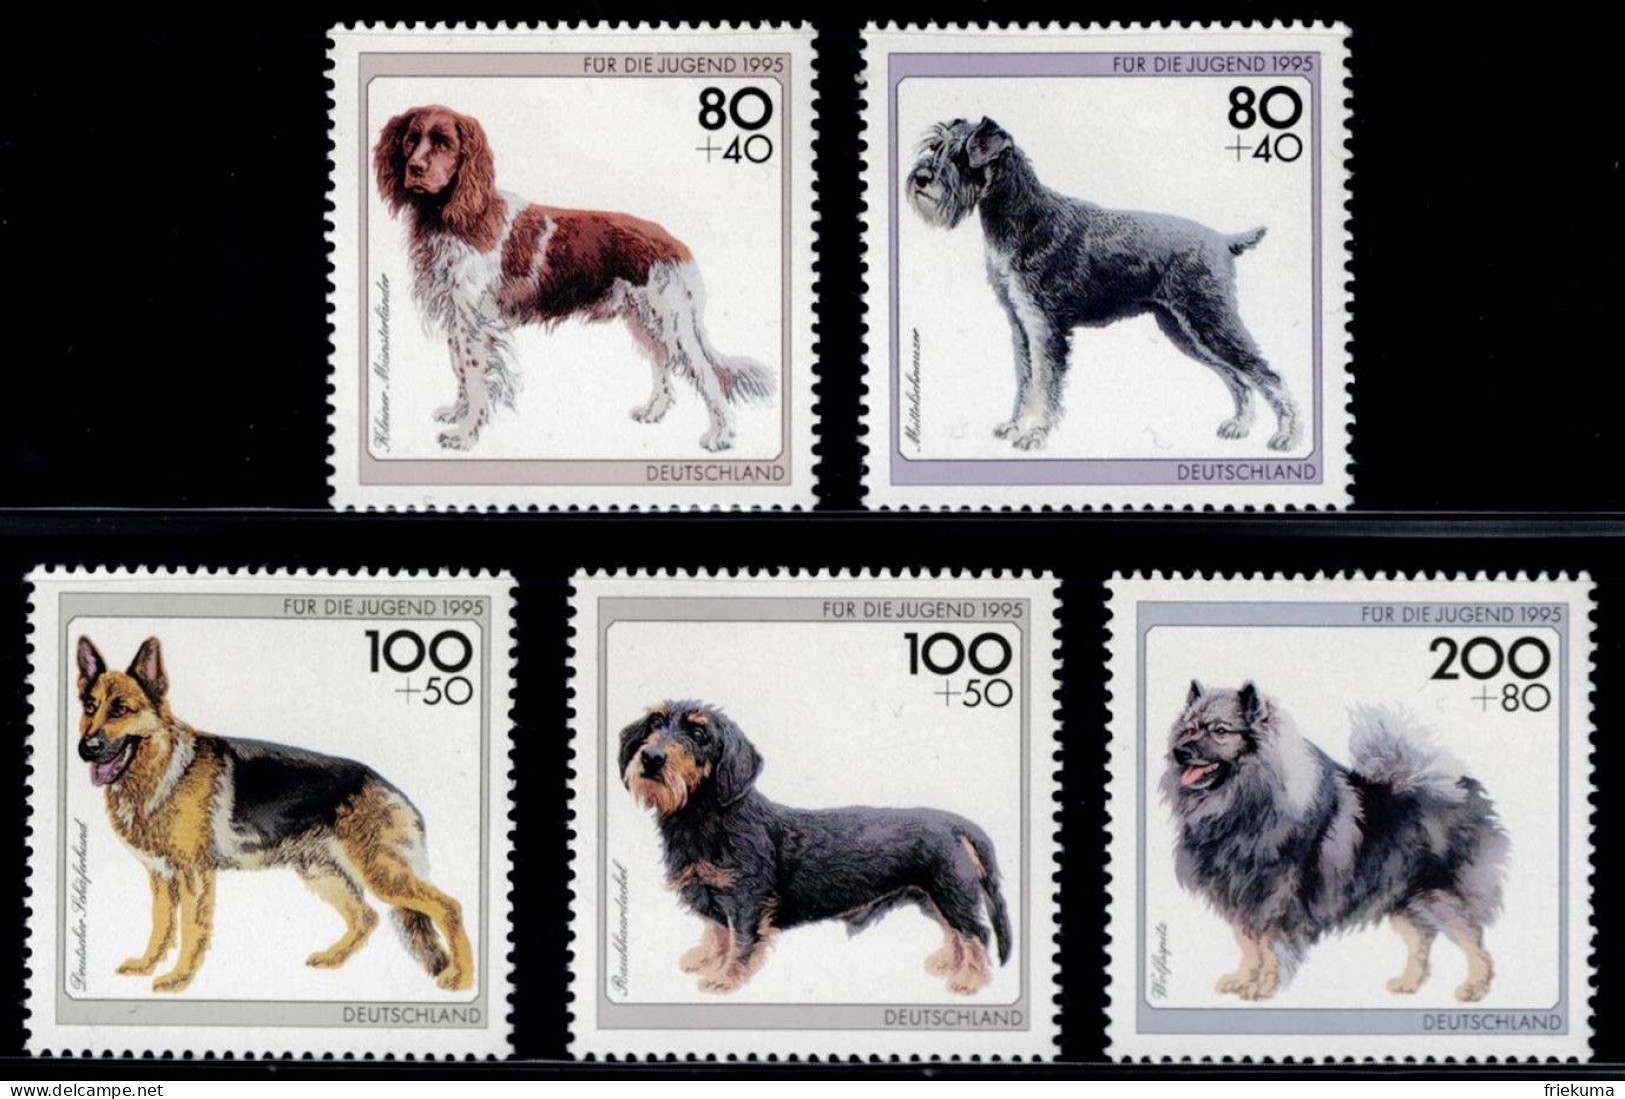 Bundesrepublik Deutschland 1995, Dogs: Small Münsterländer, Medium Schnauzer, Wolfspitz, Etc., MiNr. 1797-1801 - Hunde